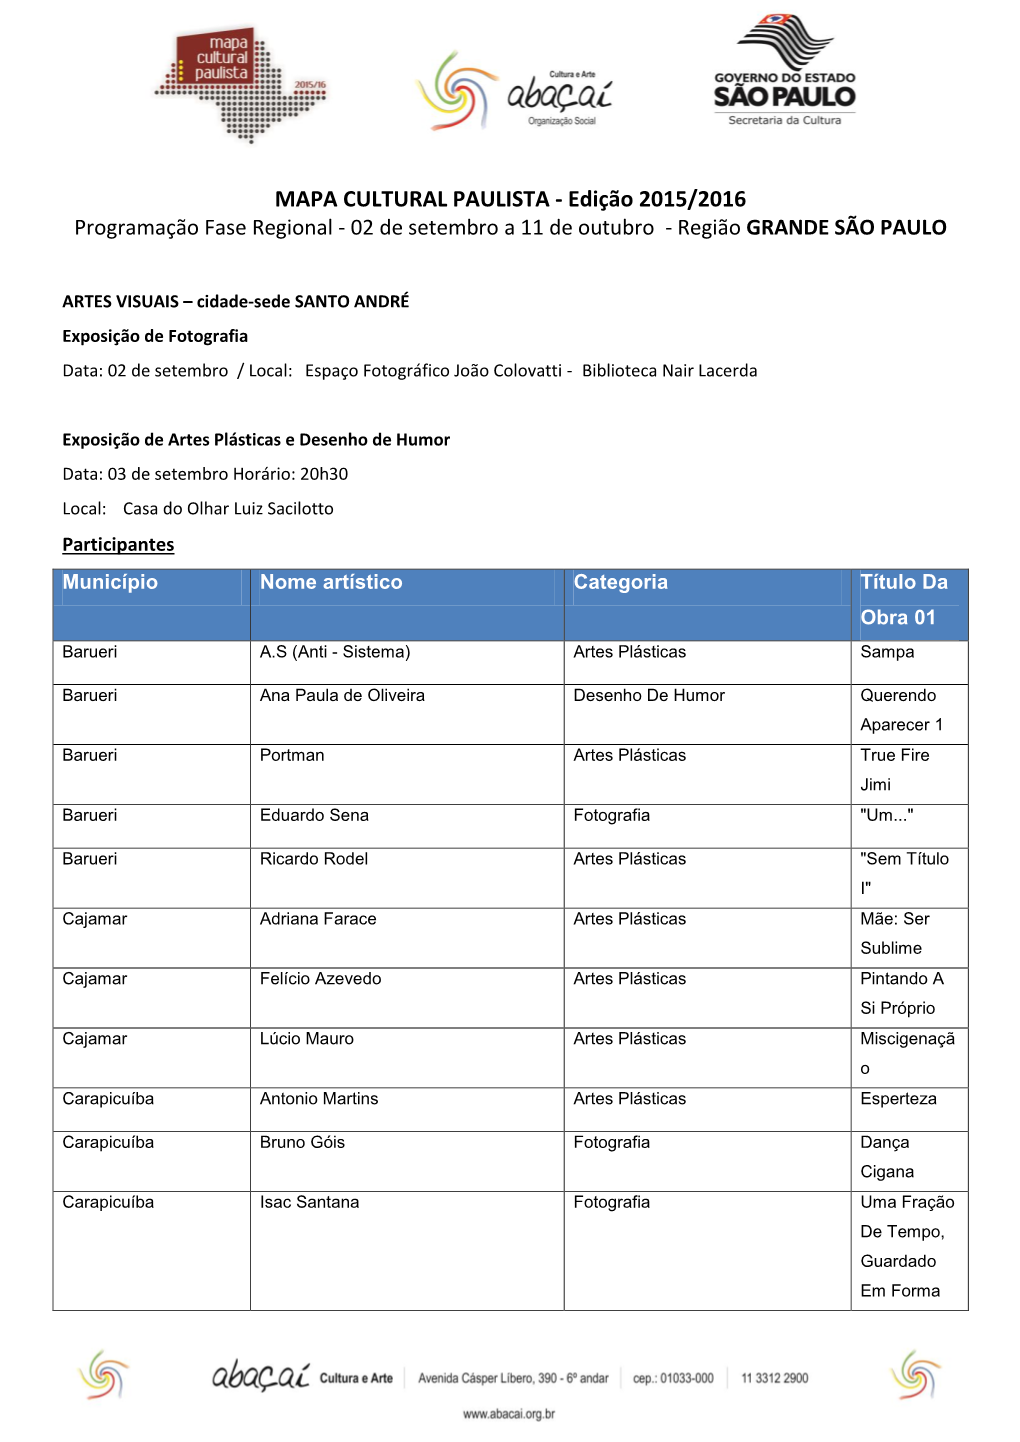 MAPA CULTURAL PAULISTA - Edição 2015/2016 Programação Fase Regional - 02 De Setembro a 11 De Outubro - Região GRANDE SÃO PAULO